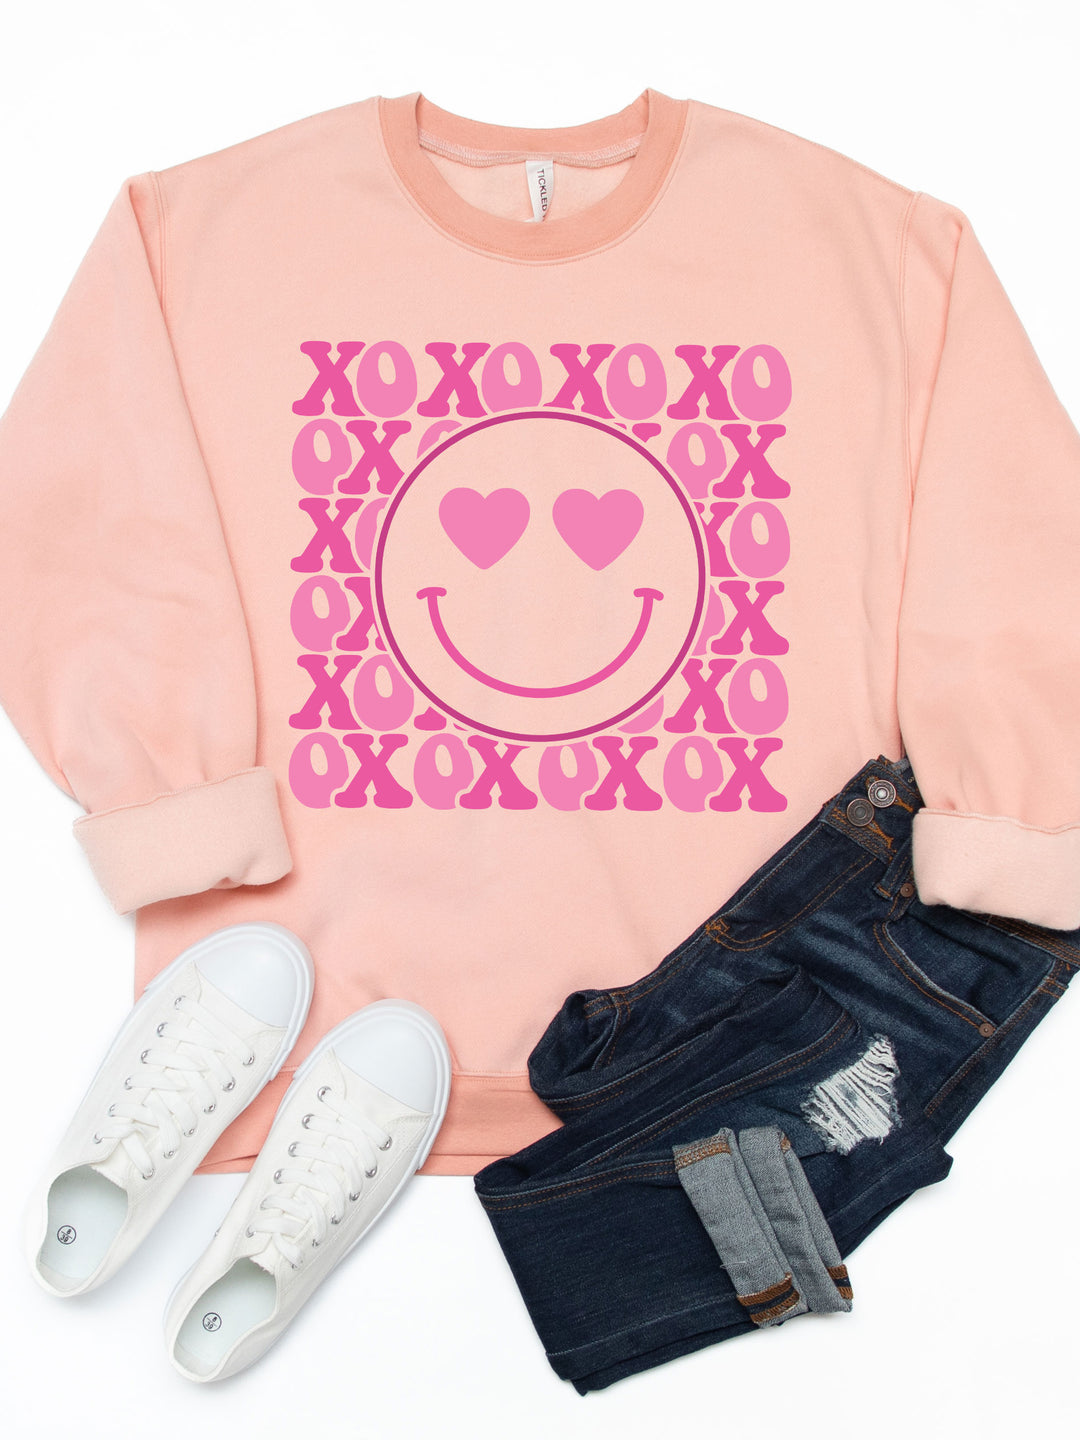 XOXO Smiley Face Graphic Sweatshirt